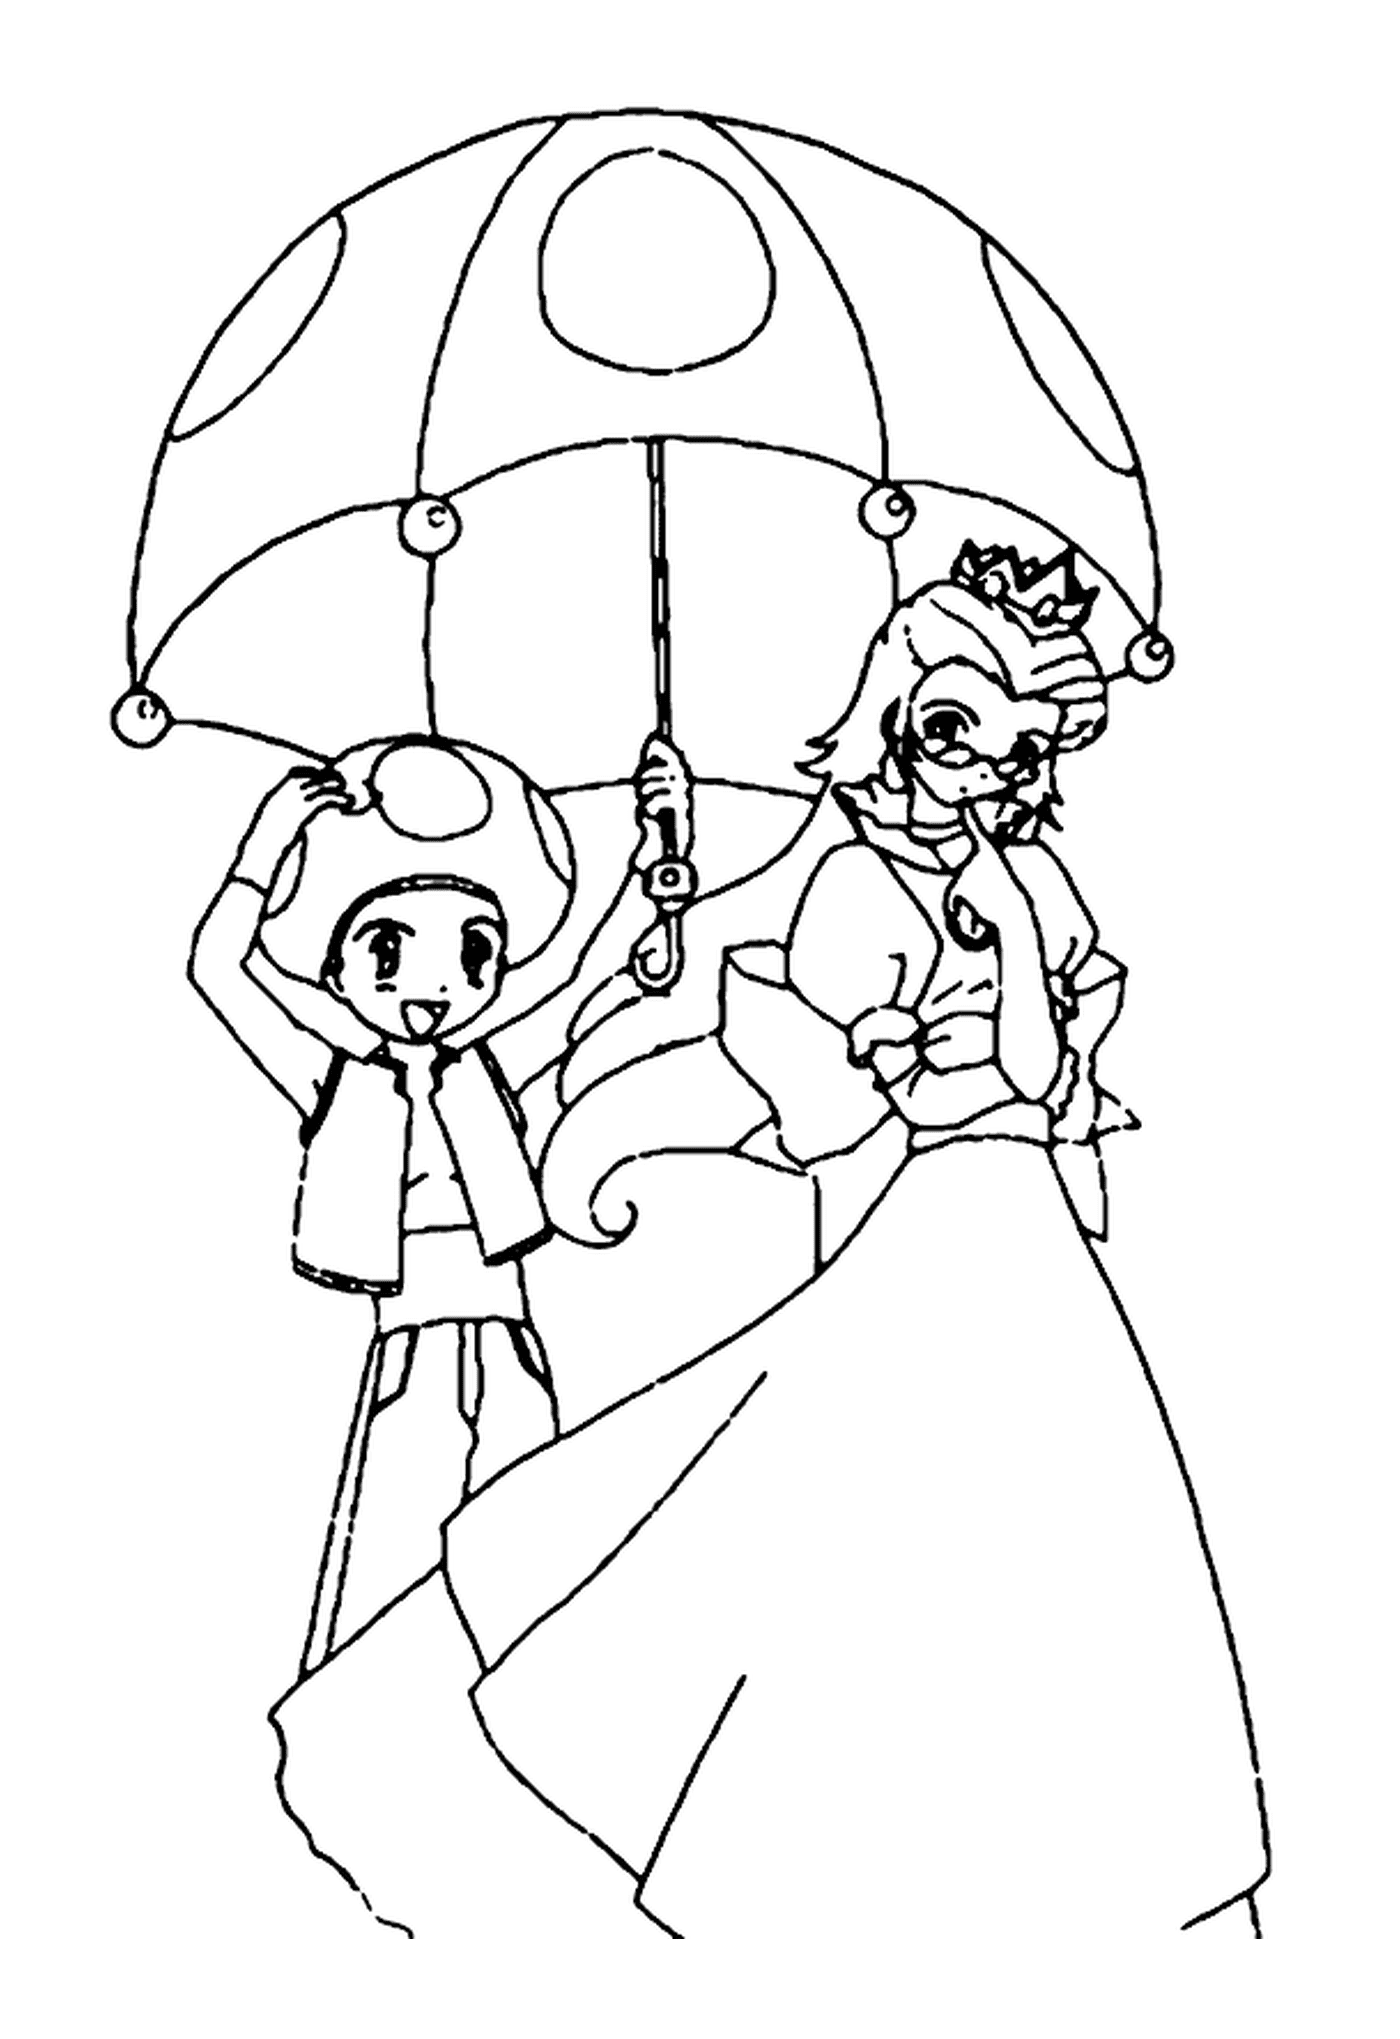  公主和Toad,一名年长妇女拿着雨伞,一名男孩拿着雨伞,一名年长妇女拿着雨伞,一名男孩拿着雨伞 